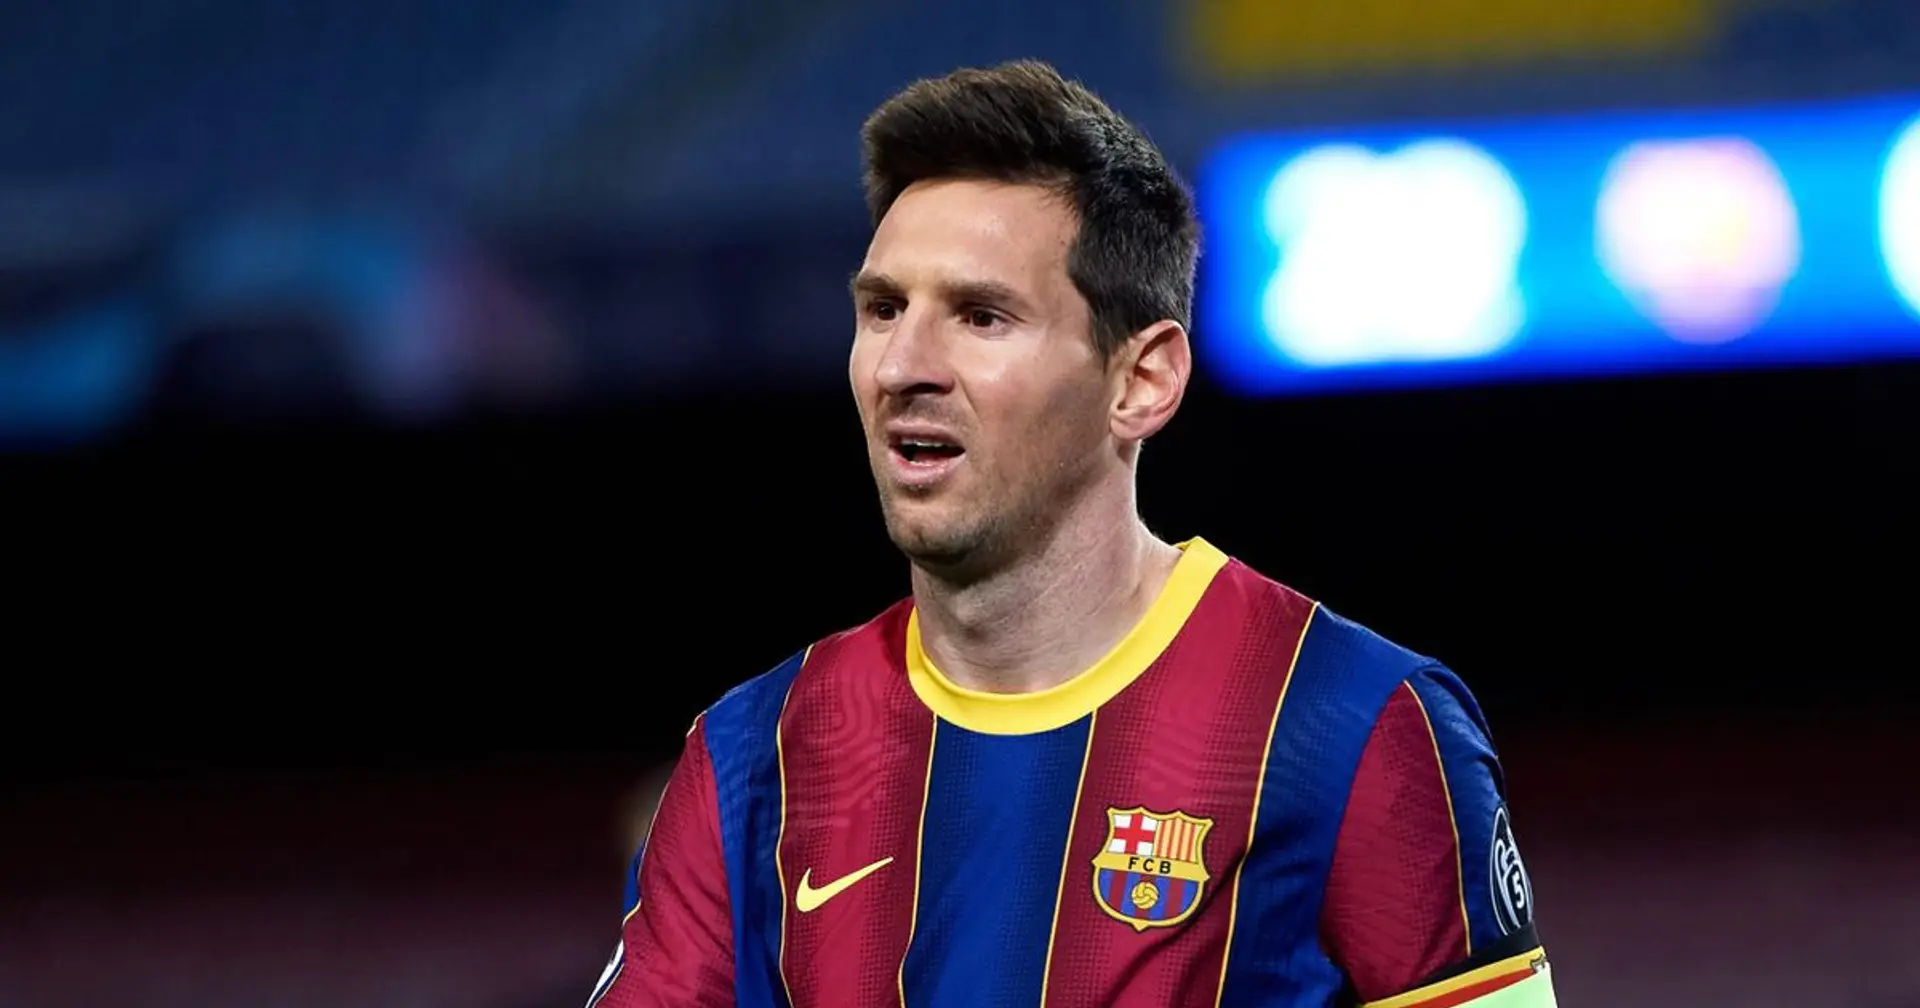 "M**de" : la réaction hilarante de Messi au stade de Man City révélée